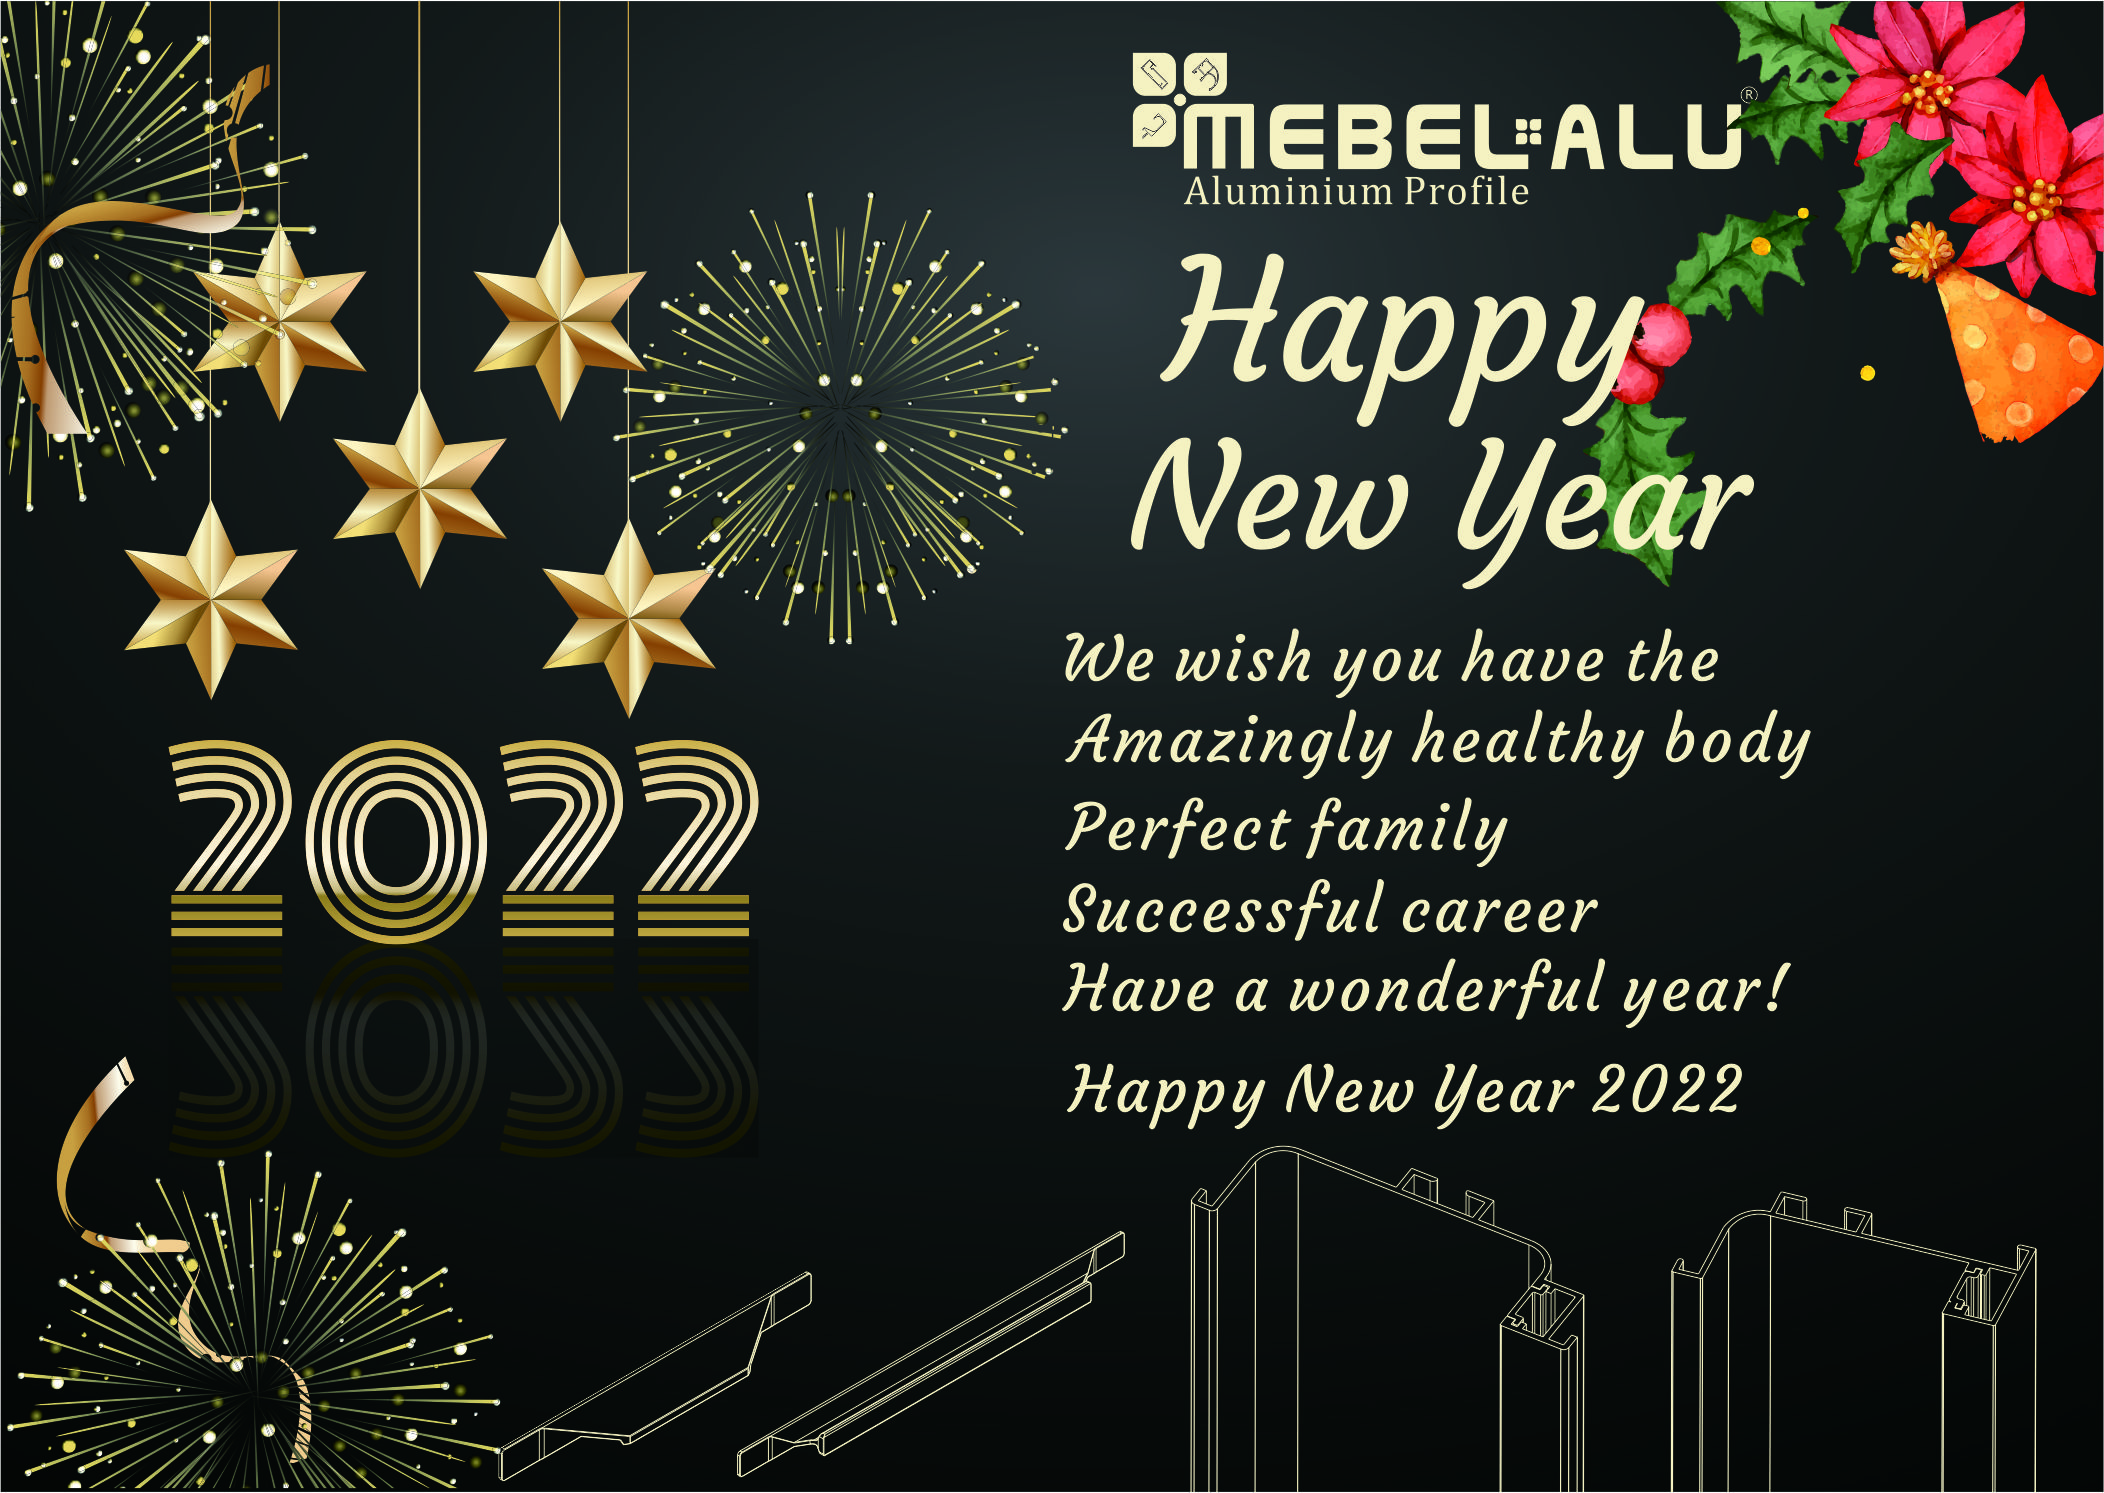 HAPPY NEW YEAR HELLO 2022!